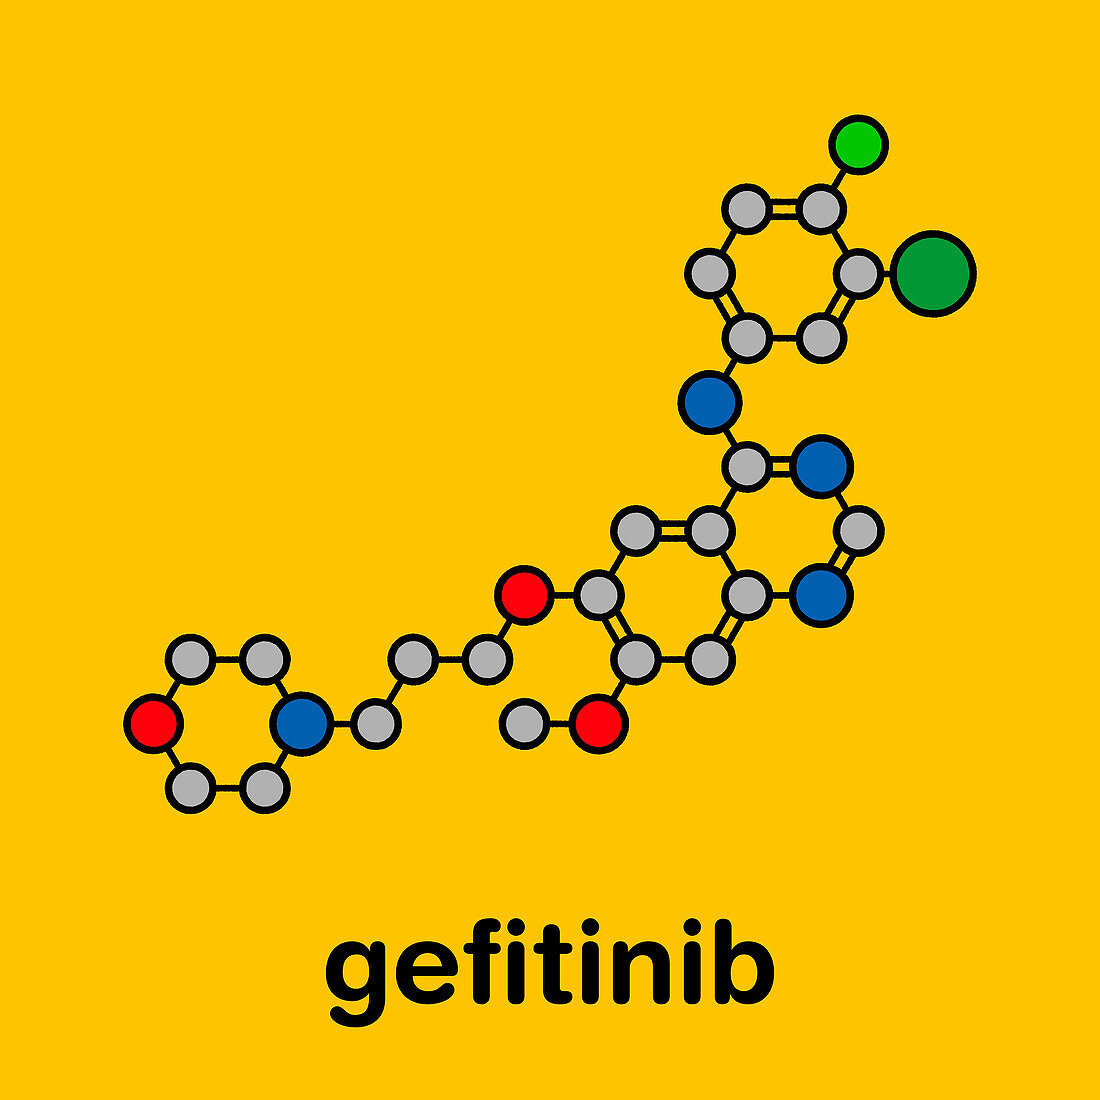 Gefitinib cancer drug, molecular model